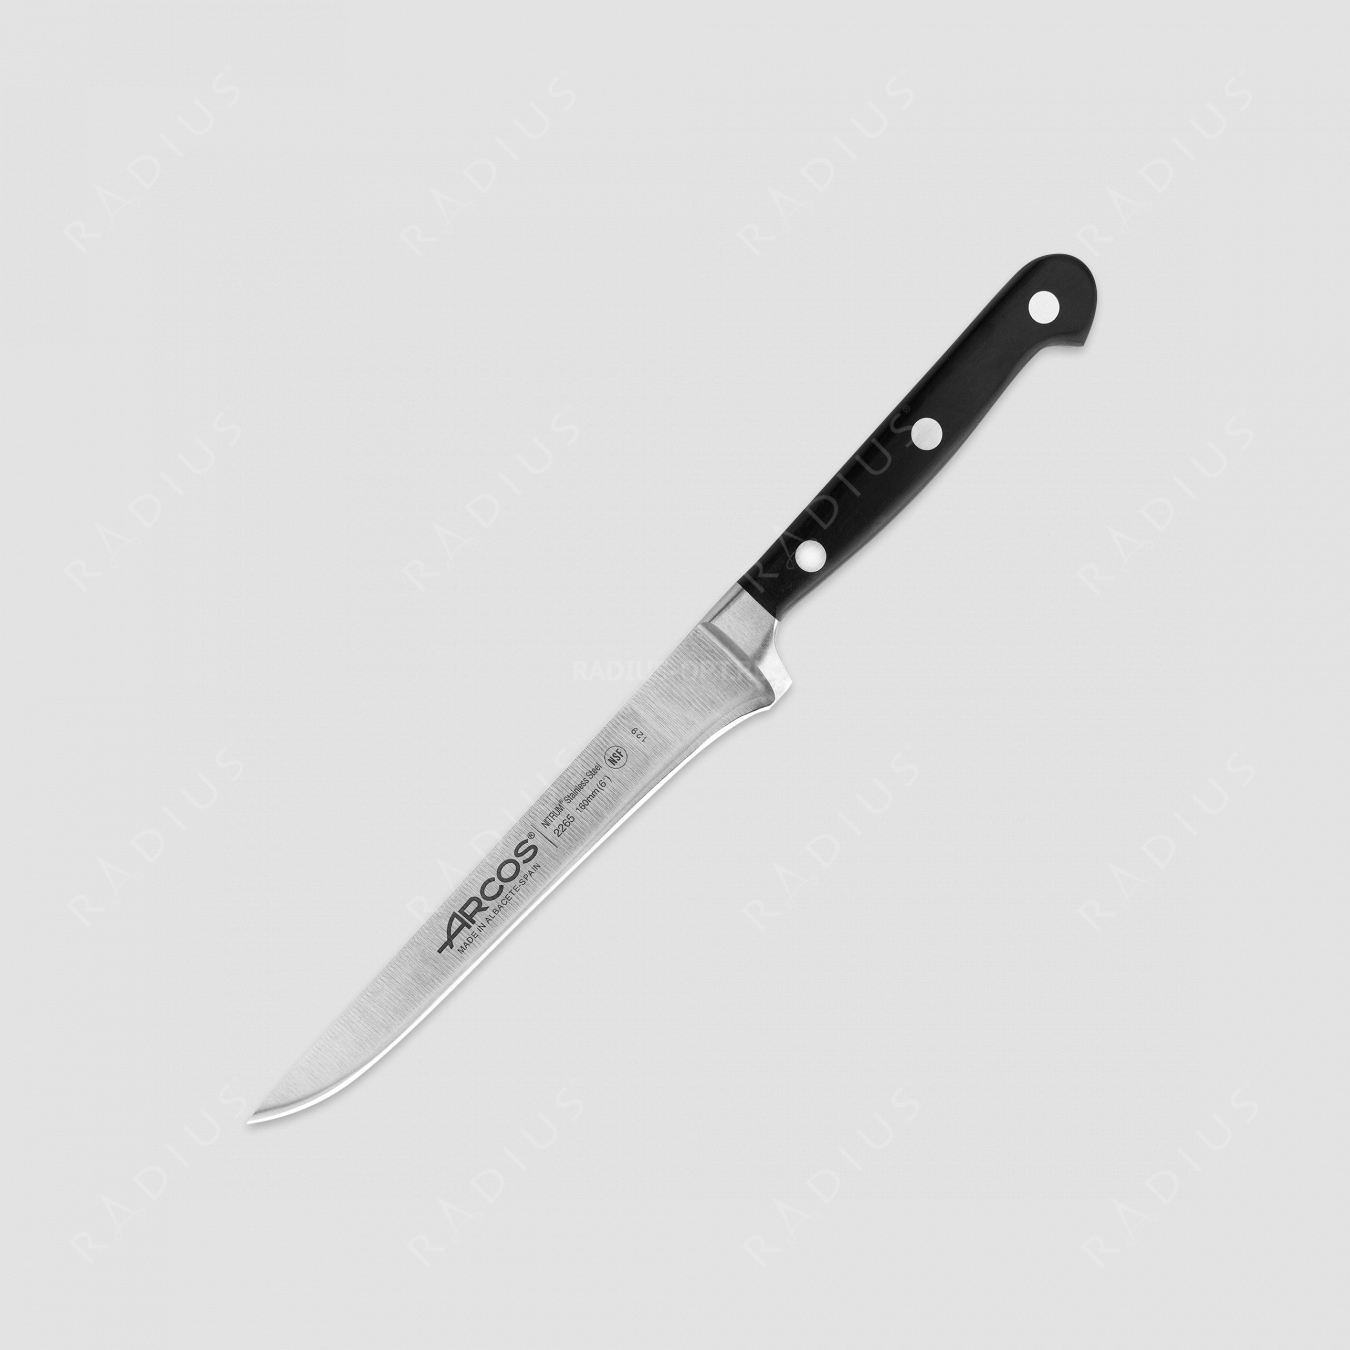 Нож кухонный обвалочный гибкий 16 см, серия Opera, ARCOS, Испания